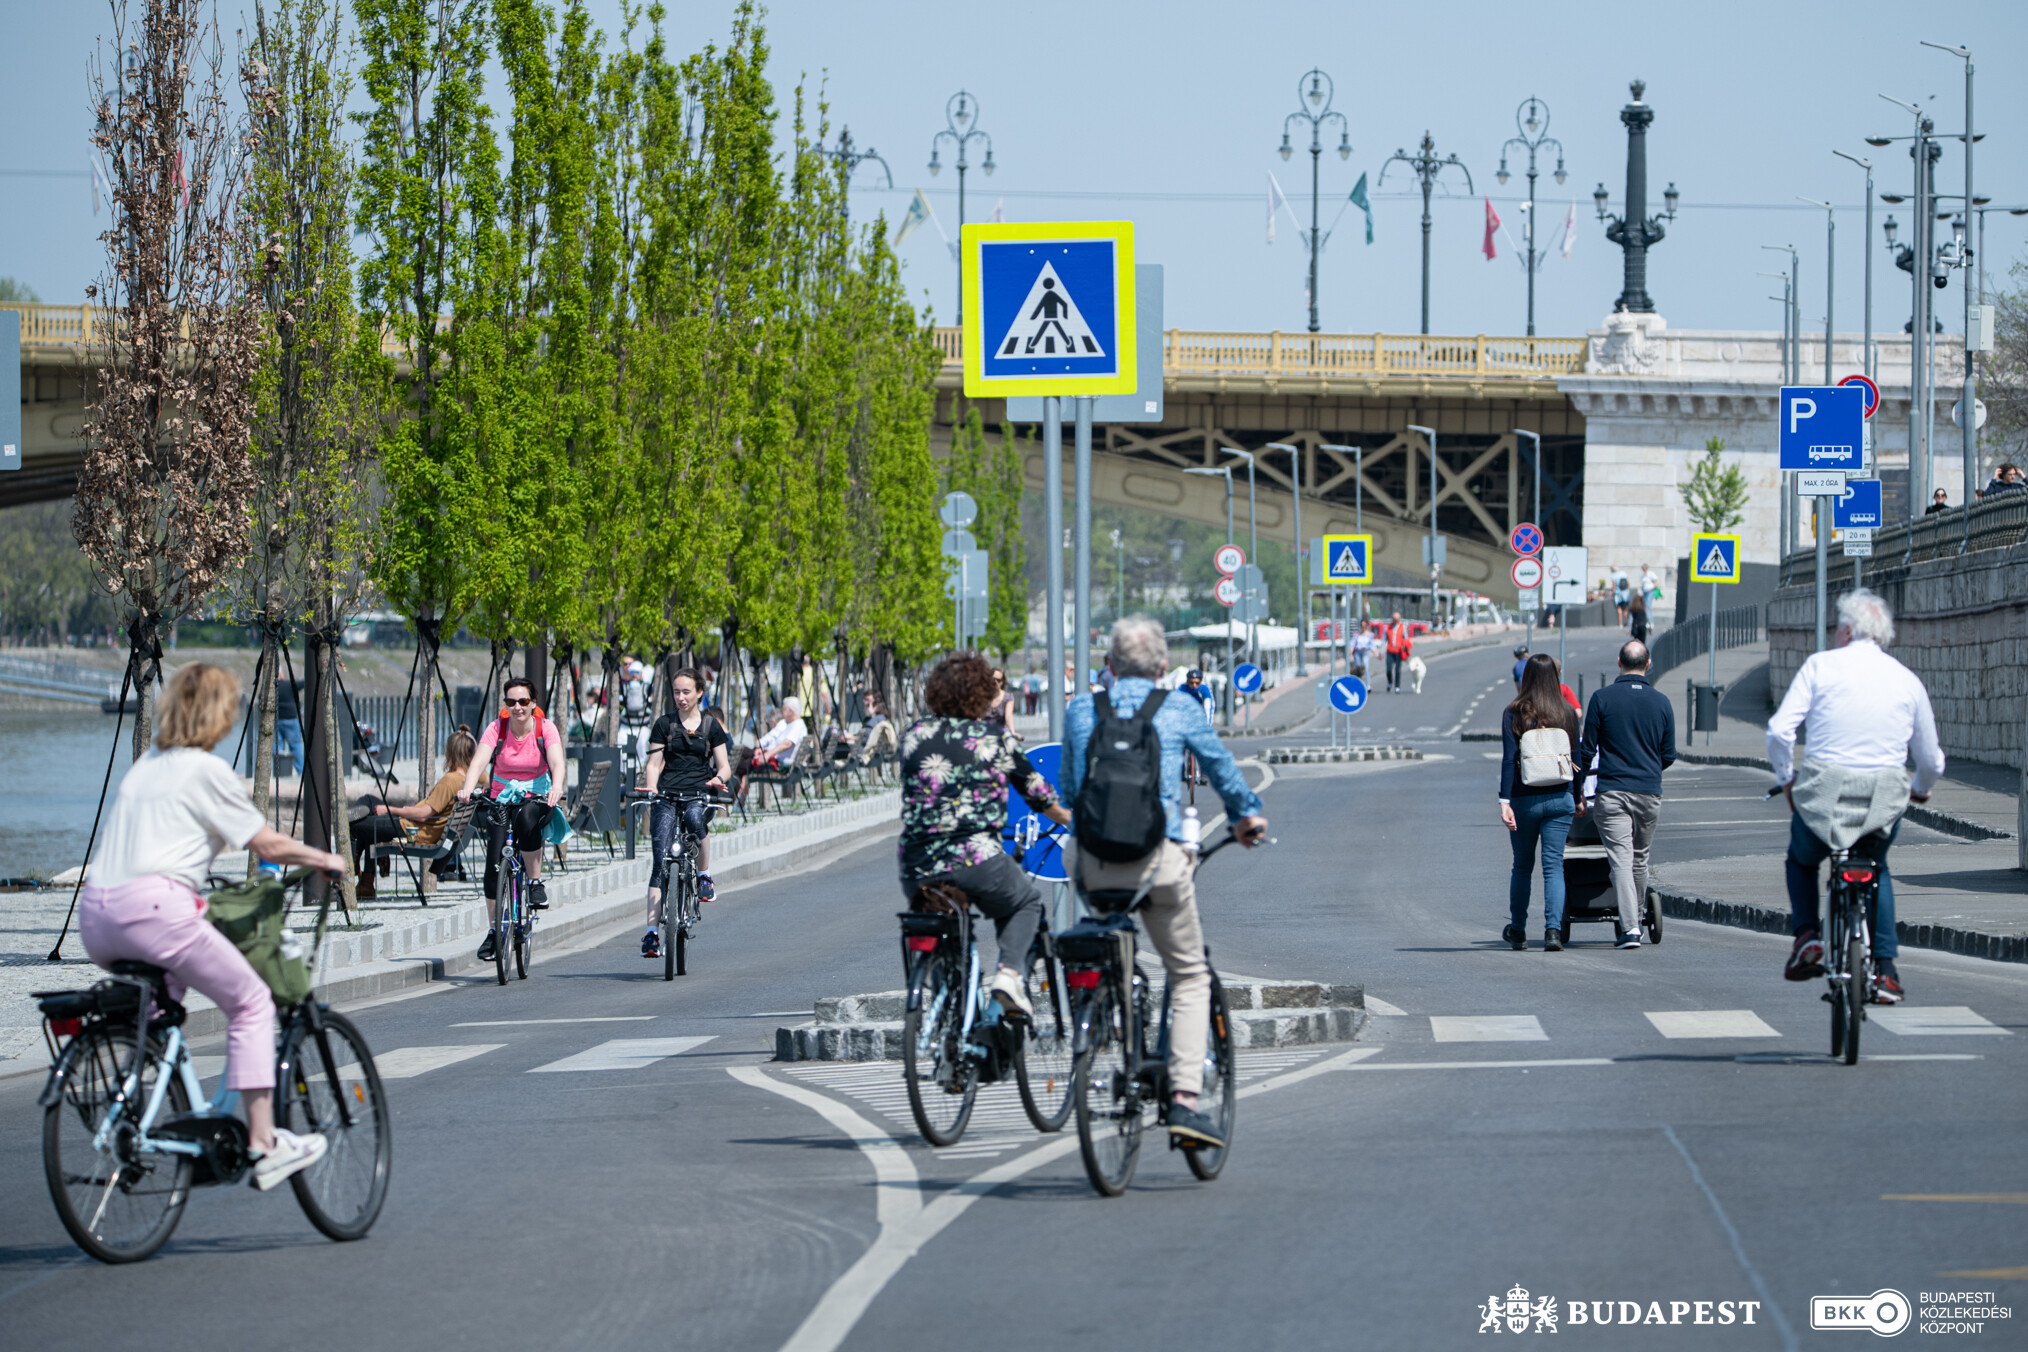 kerékpározók, sétálók, szabadidejüket töltők a Pesti alsó rakparton